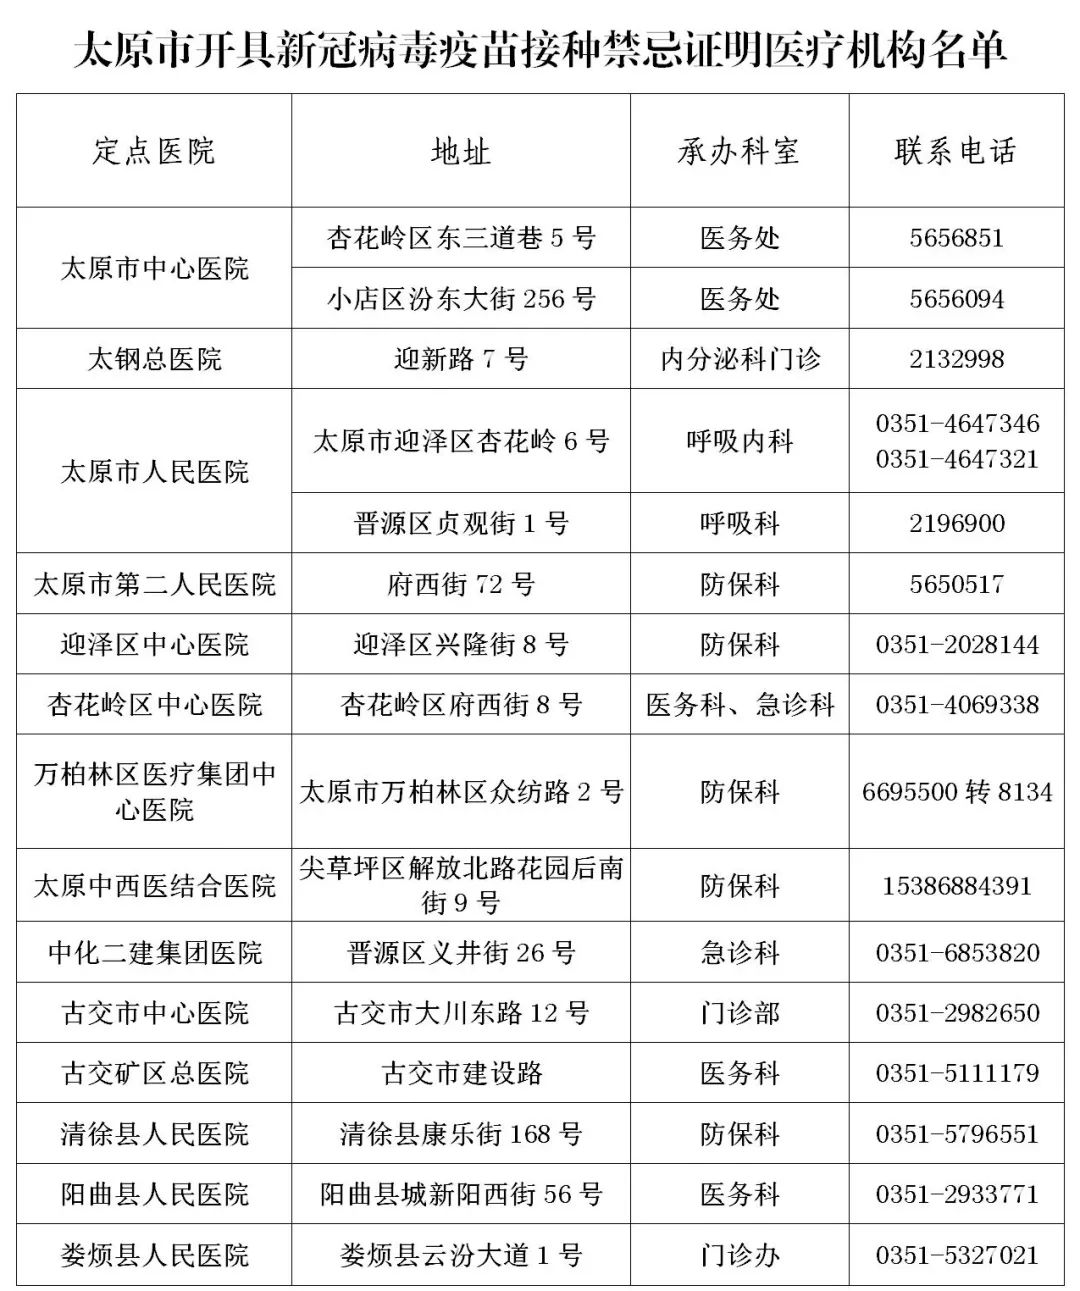 太原市目前指定14所医疗机构为定点医院,名单如下:开具接种禁忌证明的